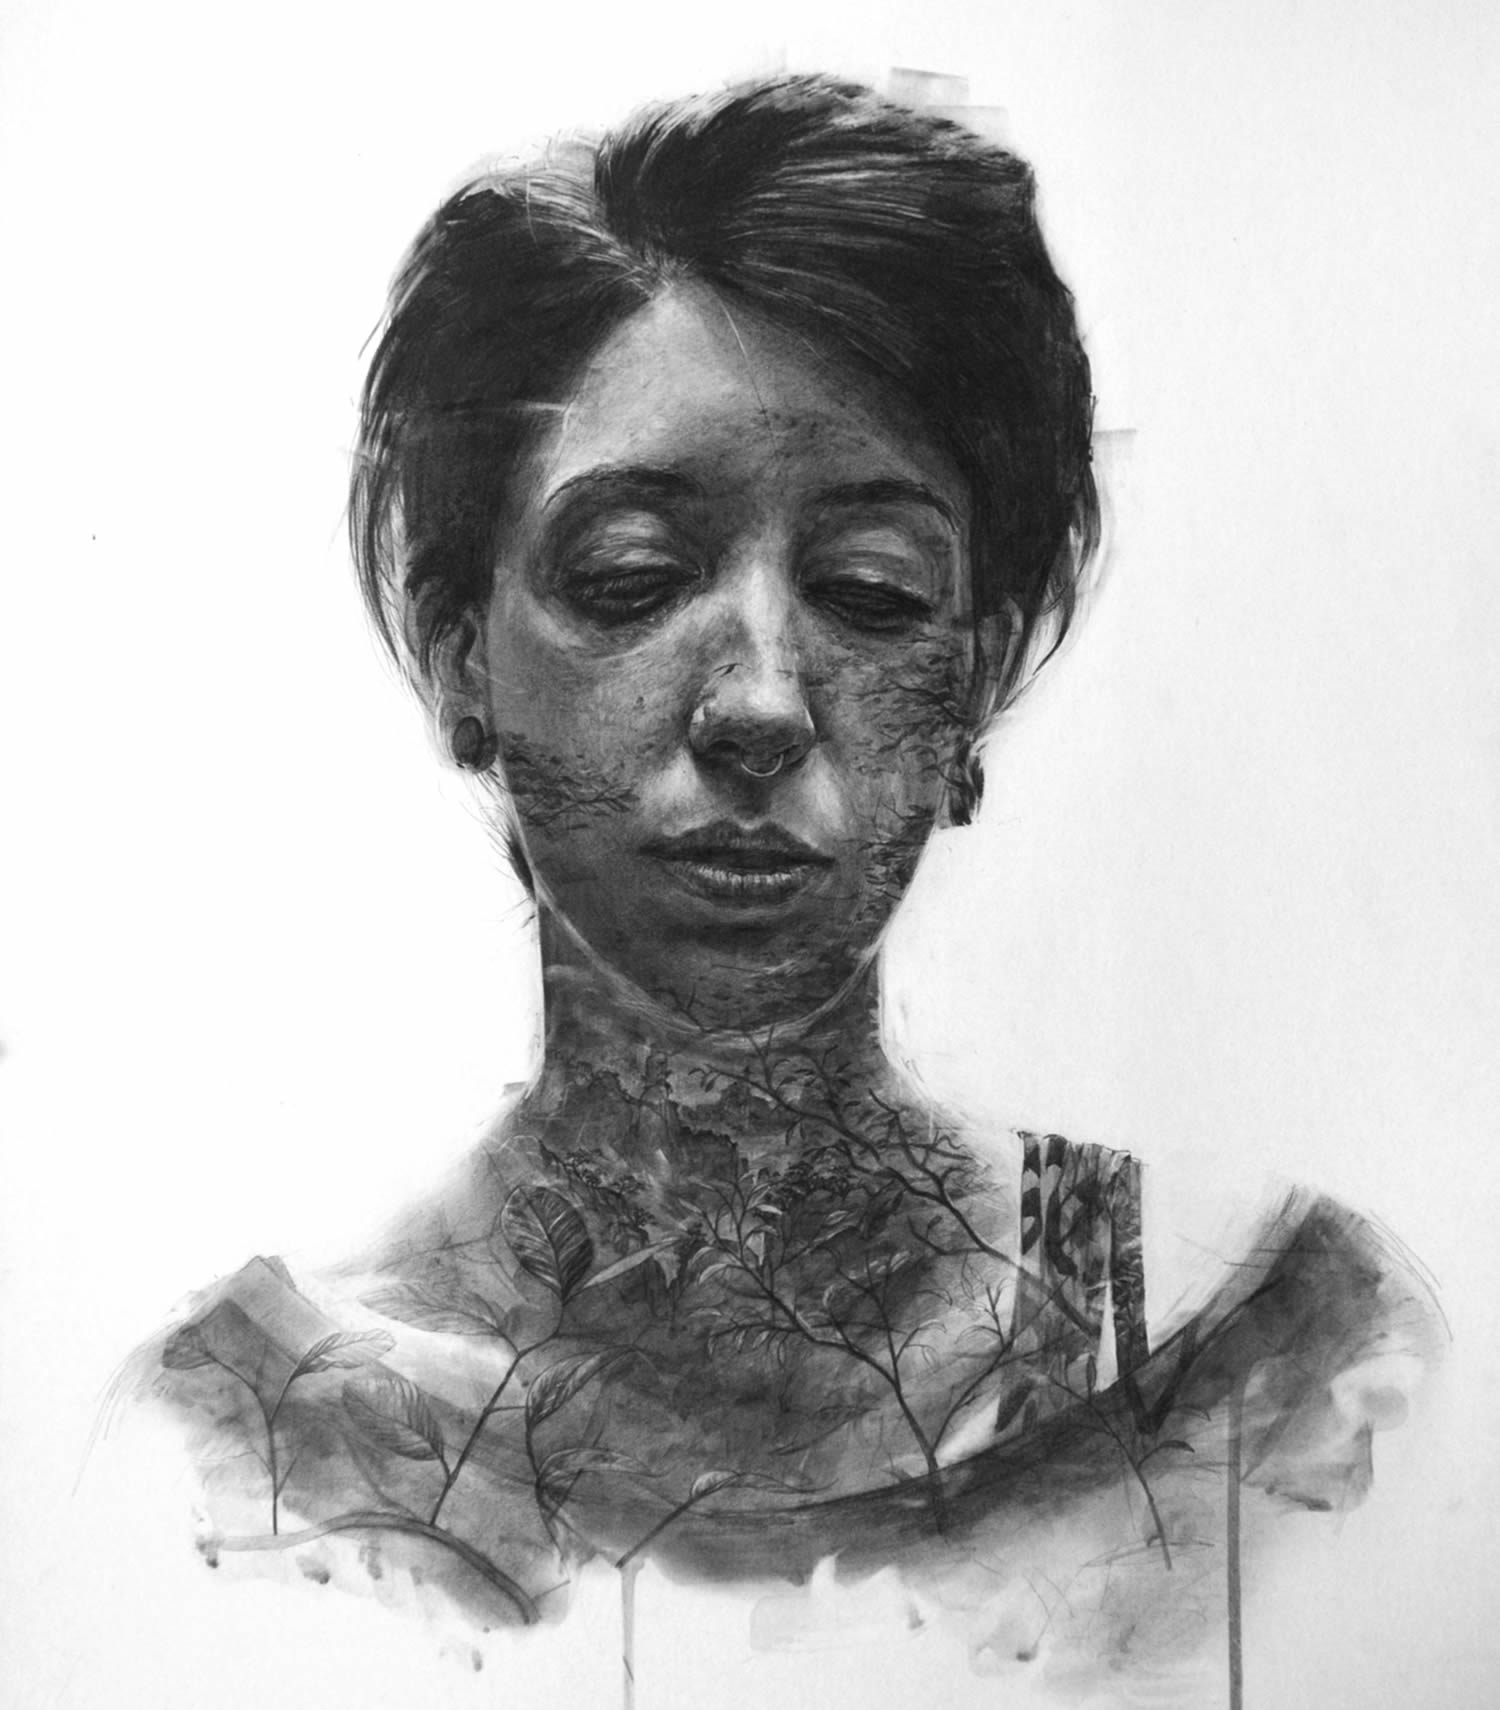 Des portraits en graphite soluble par Thomas Cian